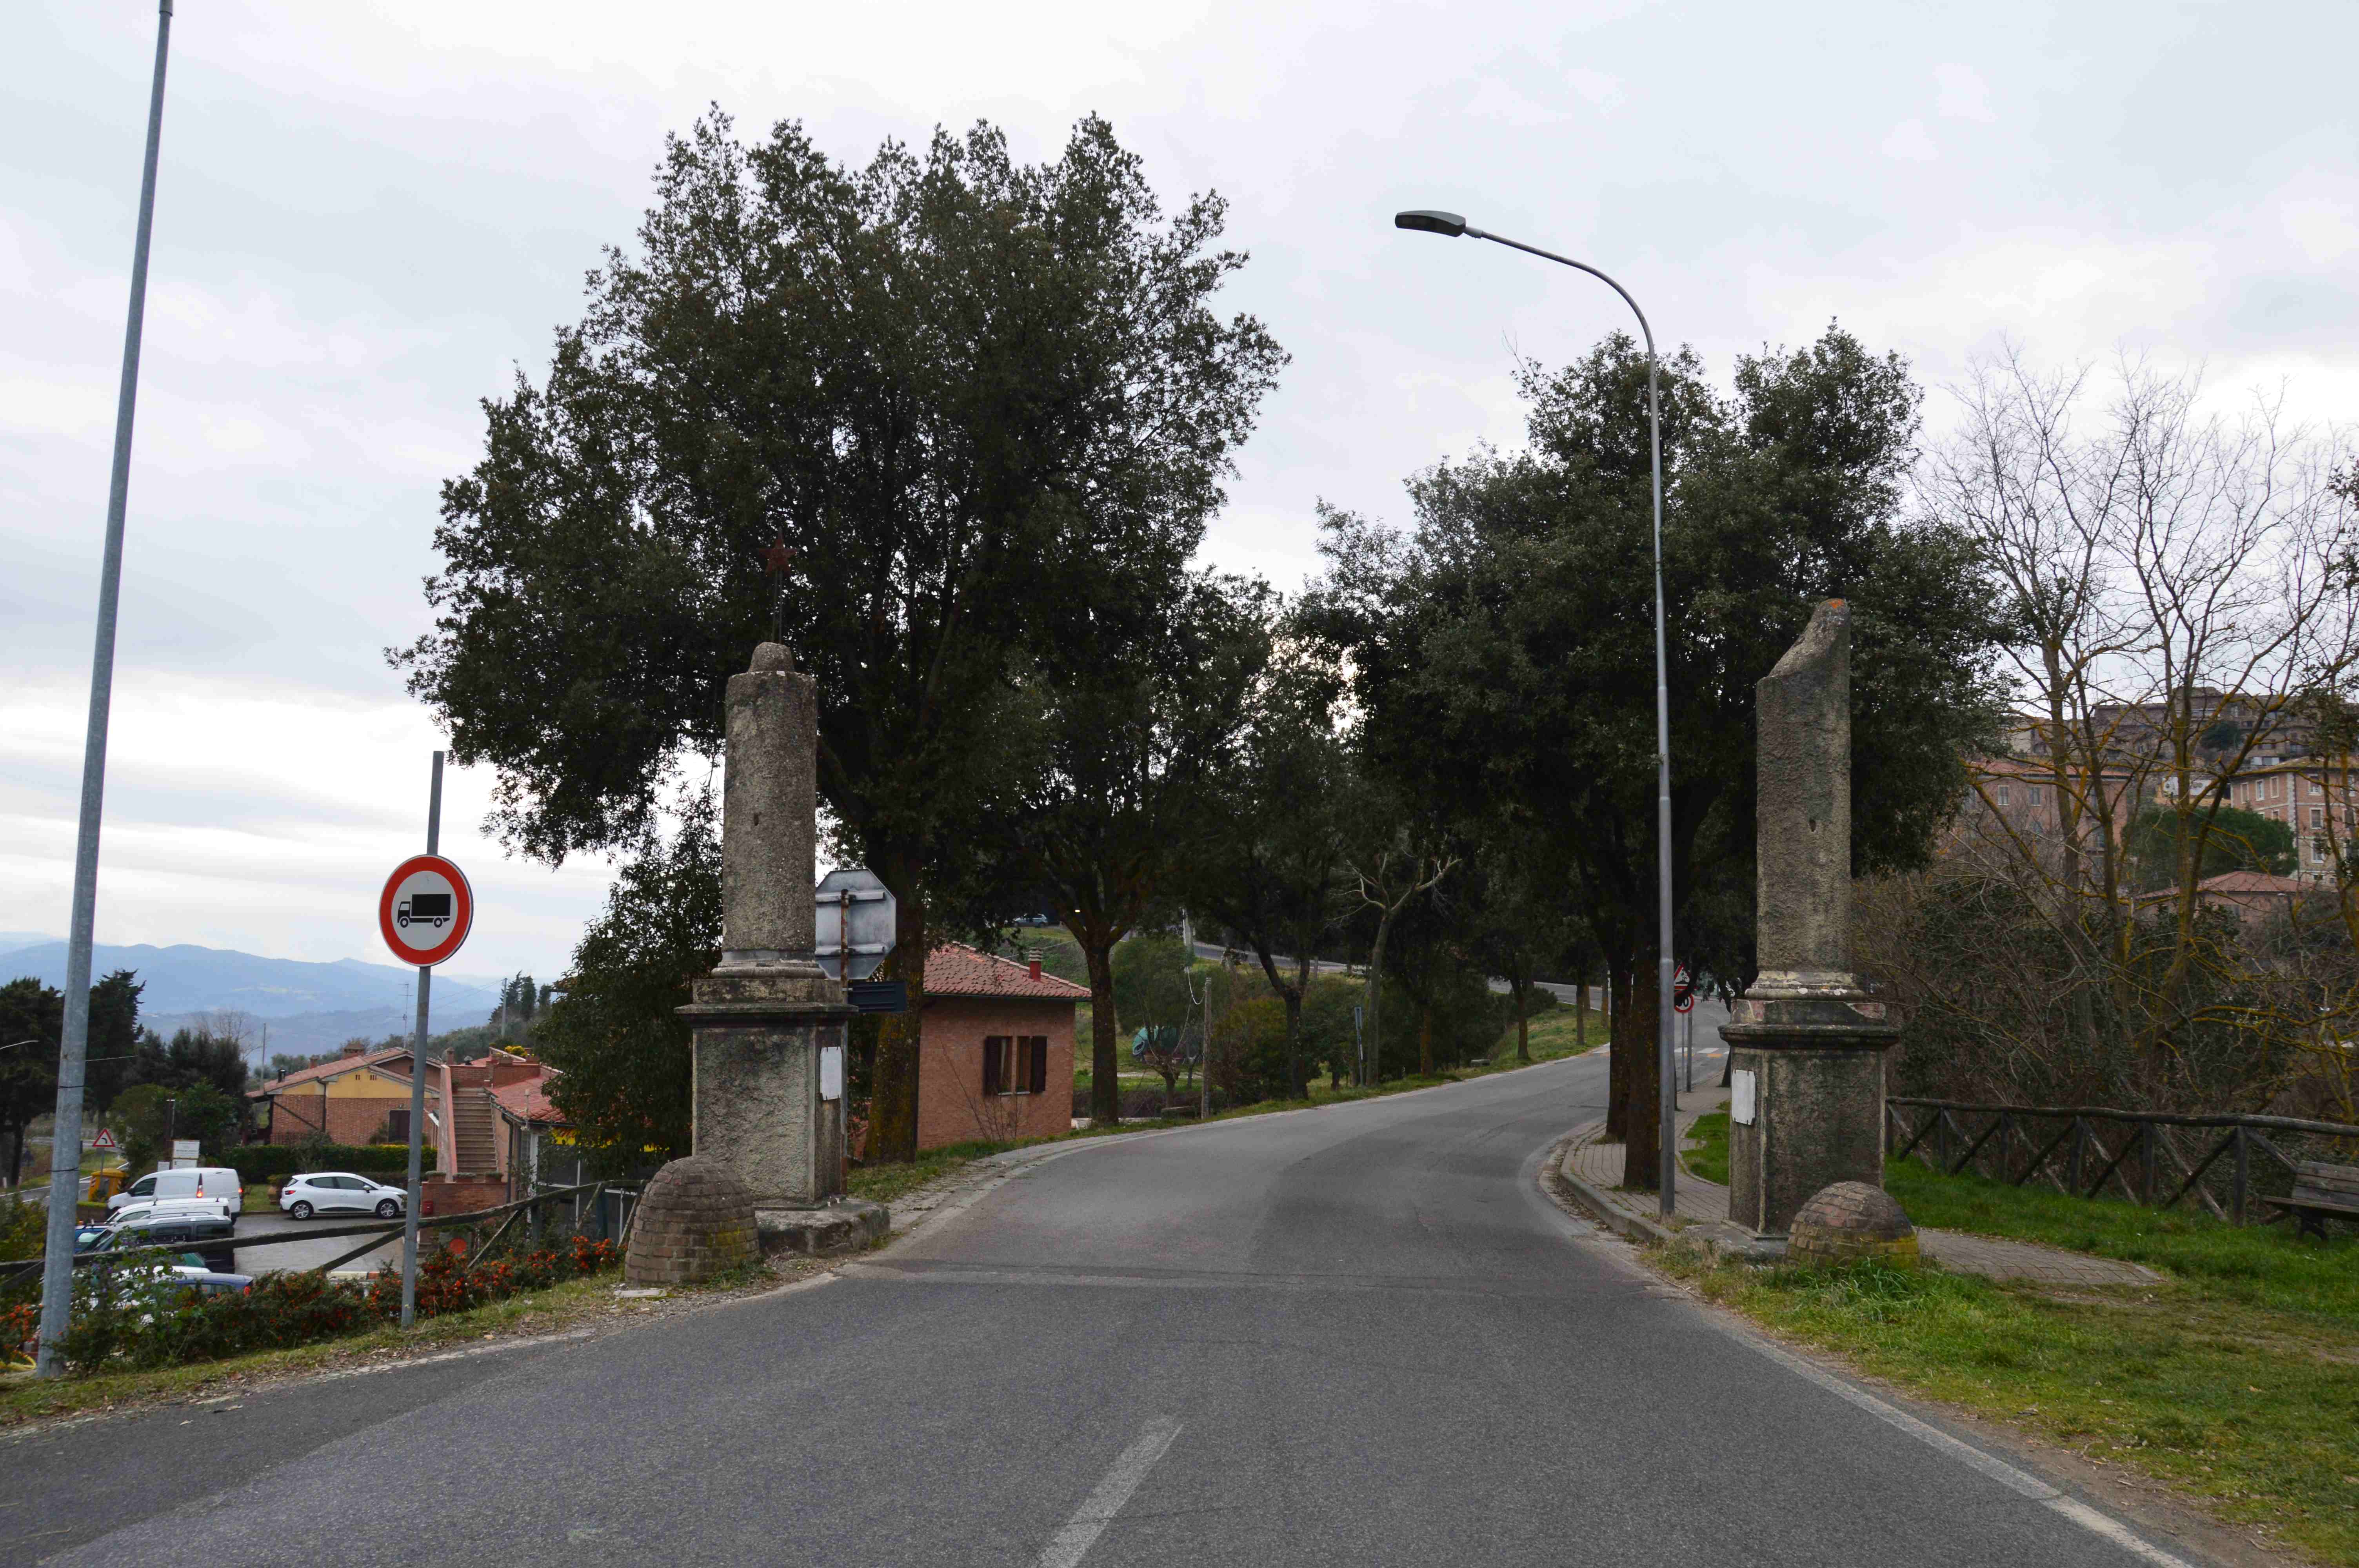 Viale, commemorativo/ ai caduti della prima guerra mondiale, Viale della Rimembranza di Casole d'Elsa - periodo fascista (XX)